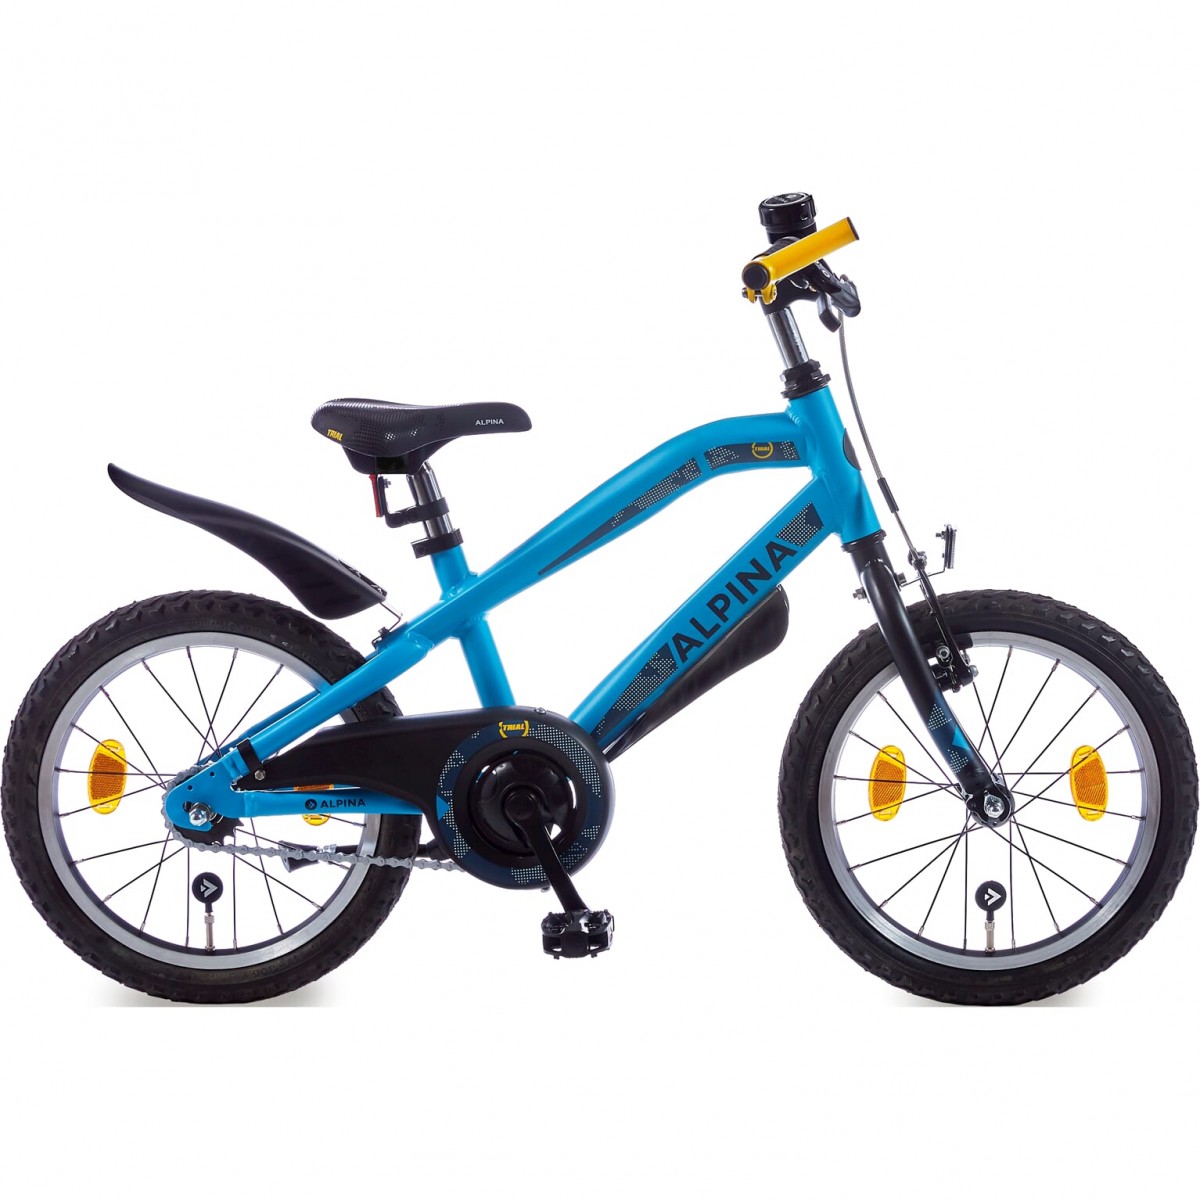 Overlappen band Verstenen Alpina Trial Active Blue Matt (16 inch Jongens fiets) goedkoop in de  webshop van Knop Tweewielers bestellen